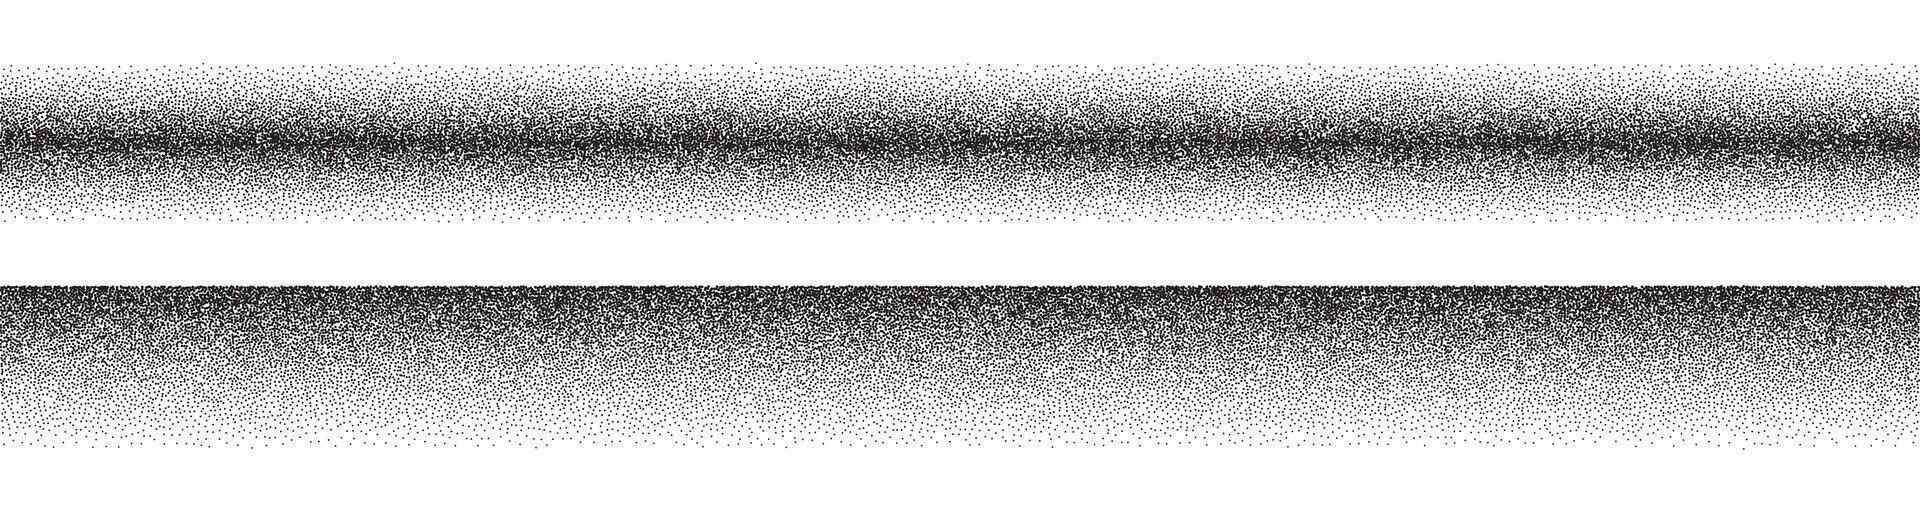 lawaai helling strip. graan gradatie lijn. punt patroon textuur. grunge zand stof. vector